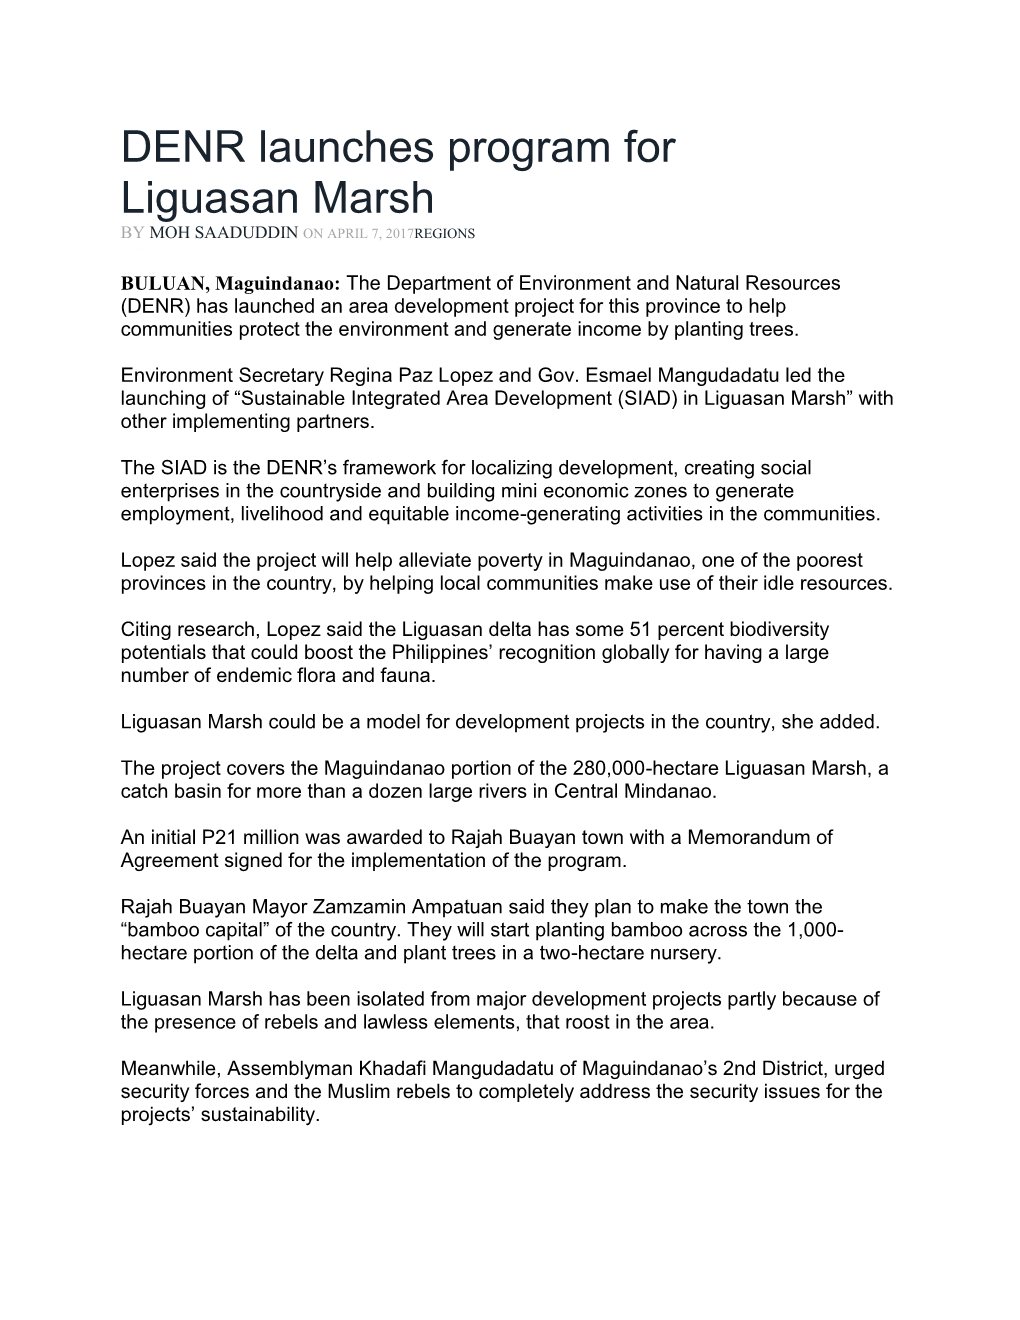 DENR Launches Program for Liguasan Marsh